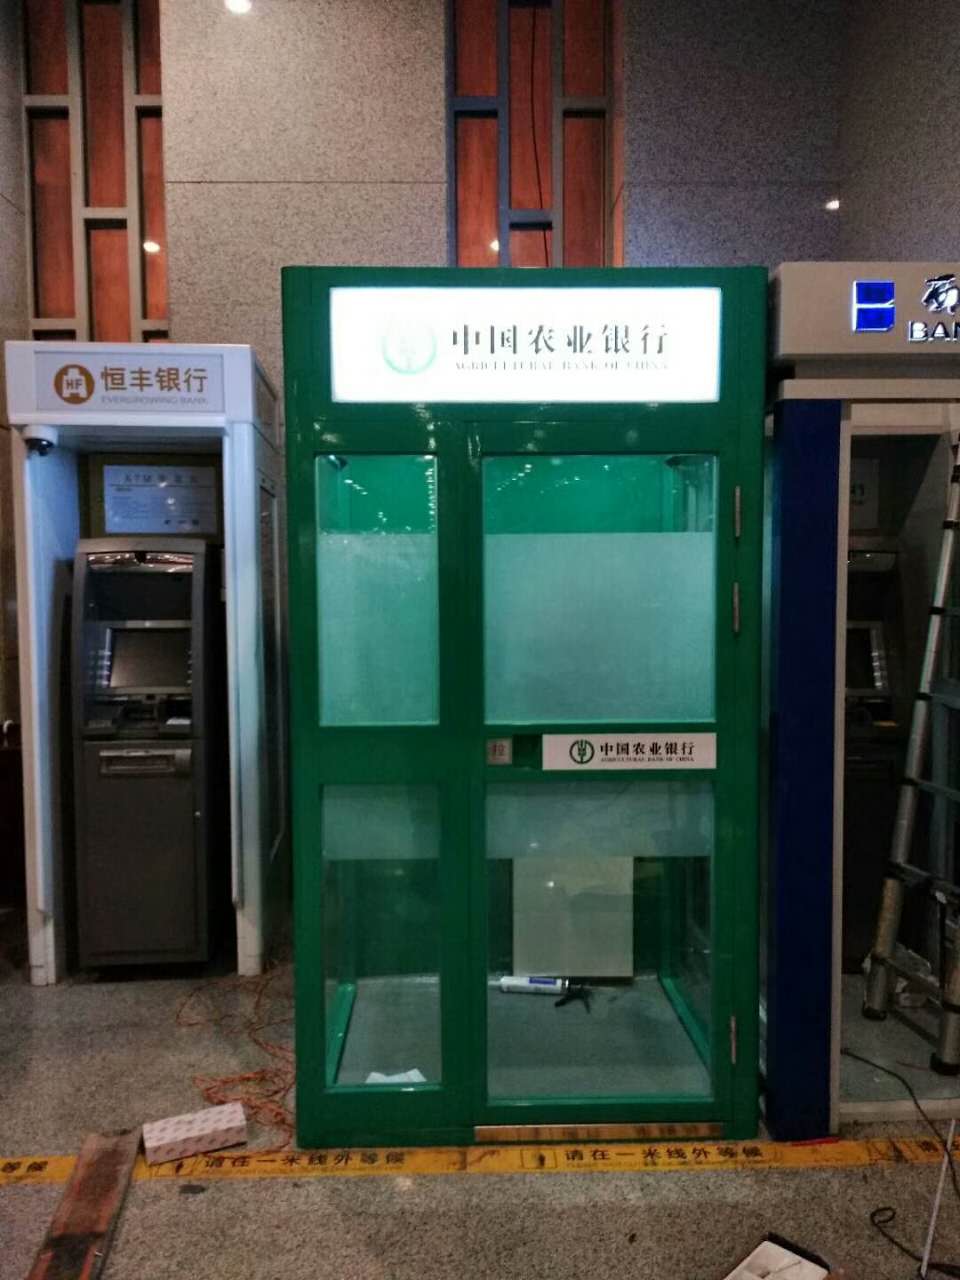 自助售货终端机外罩 ATM自助设备外罩